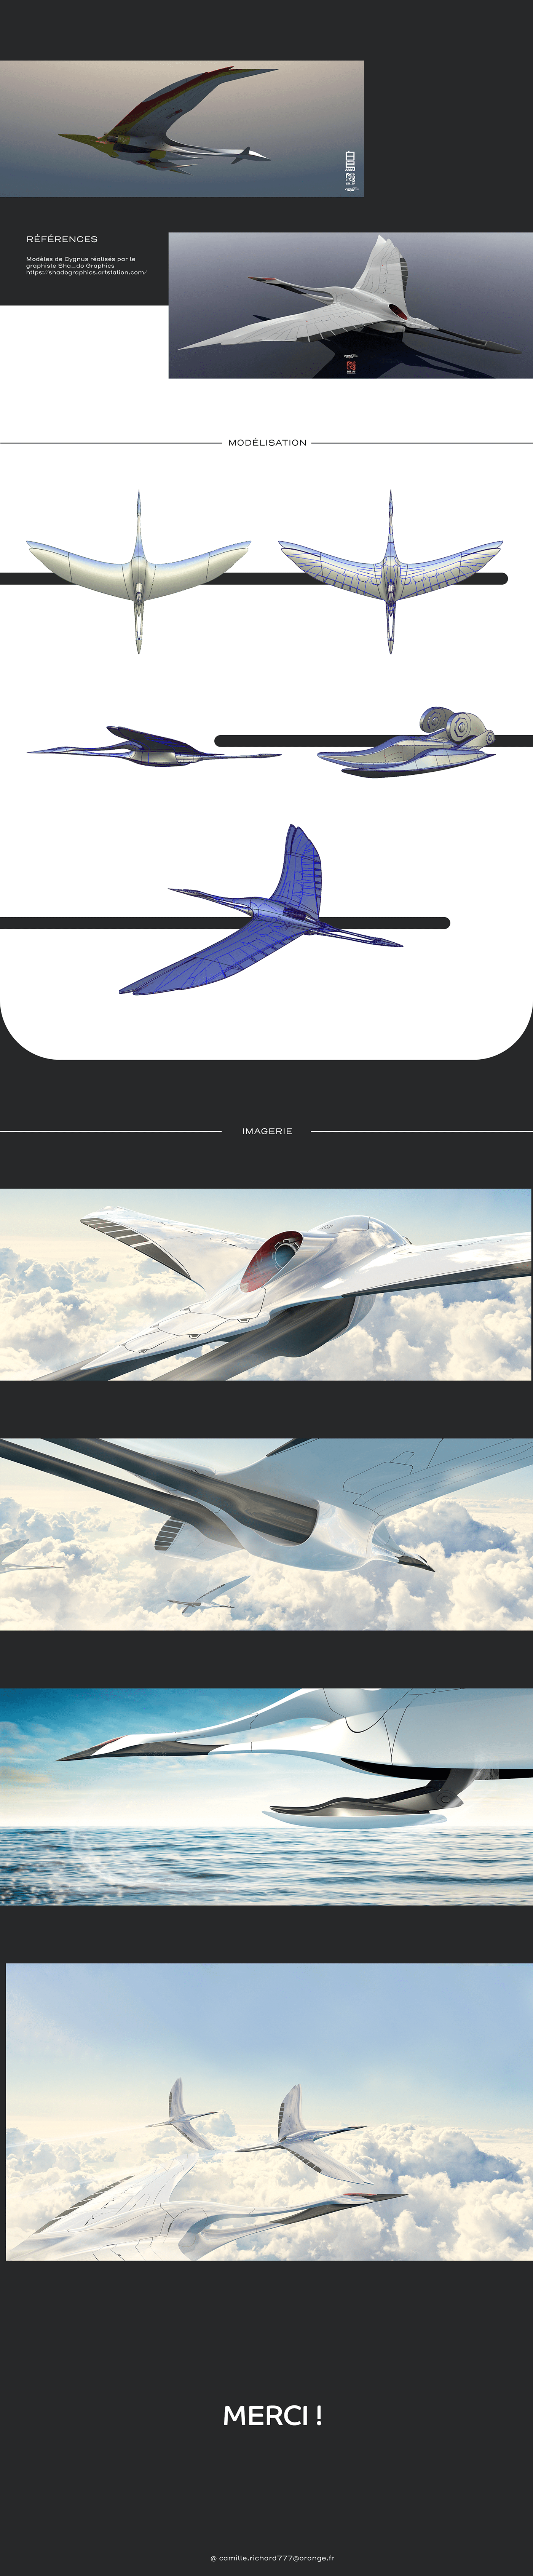 3D 3d modeling airplane bird Jet modeling plane Render concept